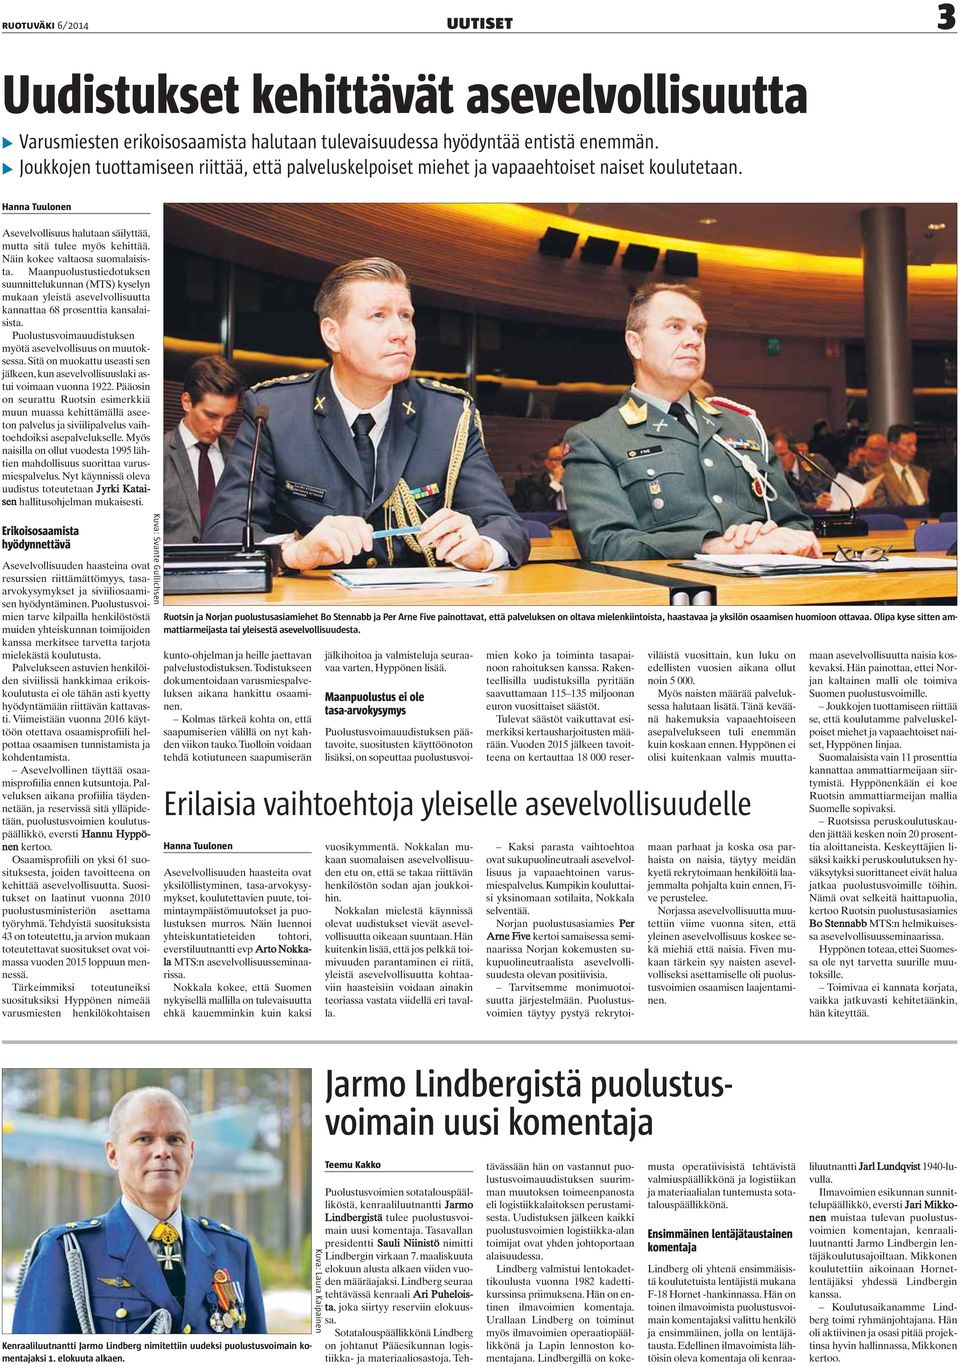 Näin kokee valtaosa suomalaisista. Maanpuolustustiedotuksen suunnittelukunnan (MTS) kyselyn mukaan yleistä asevelvollisuutta kannattaa 68 prosenttia kansalaisista.